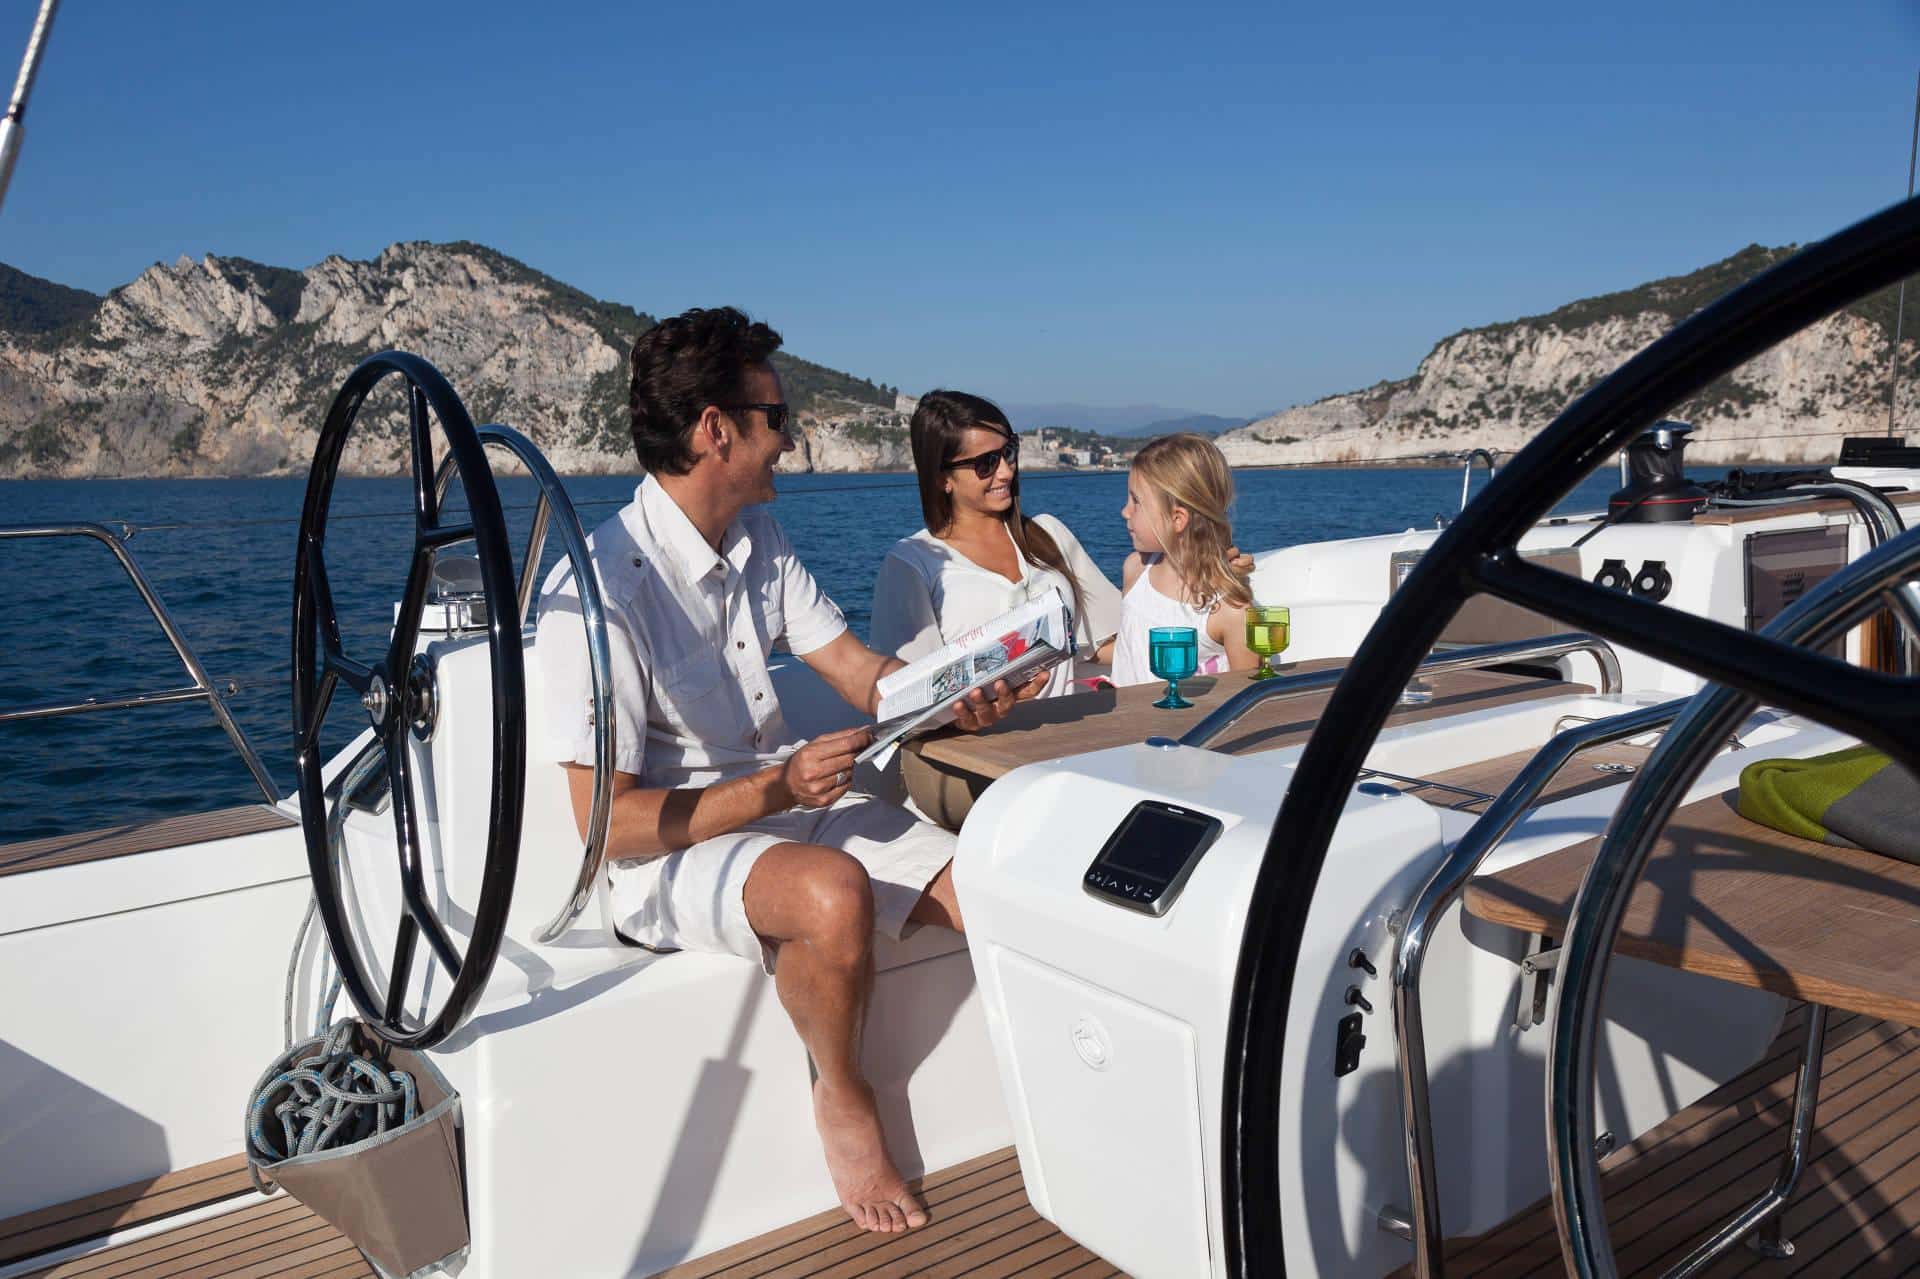 Drei Menschen genießen einen sonnigen Tag auf einem Luxus-Katamaran. Ein Mann steuert das Boot, zwei Frauen sitzen in der Nähe und unterhalten sich. Im Hintergrund ist eine malerische Bergküste zu sehen.